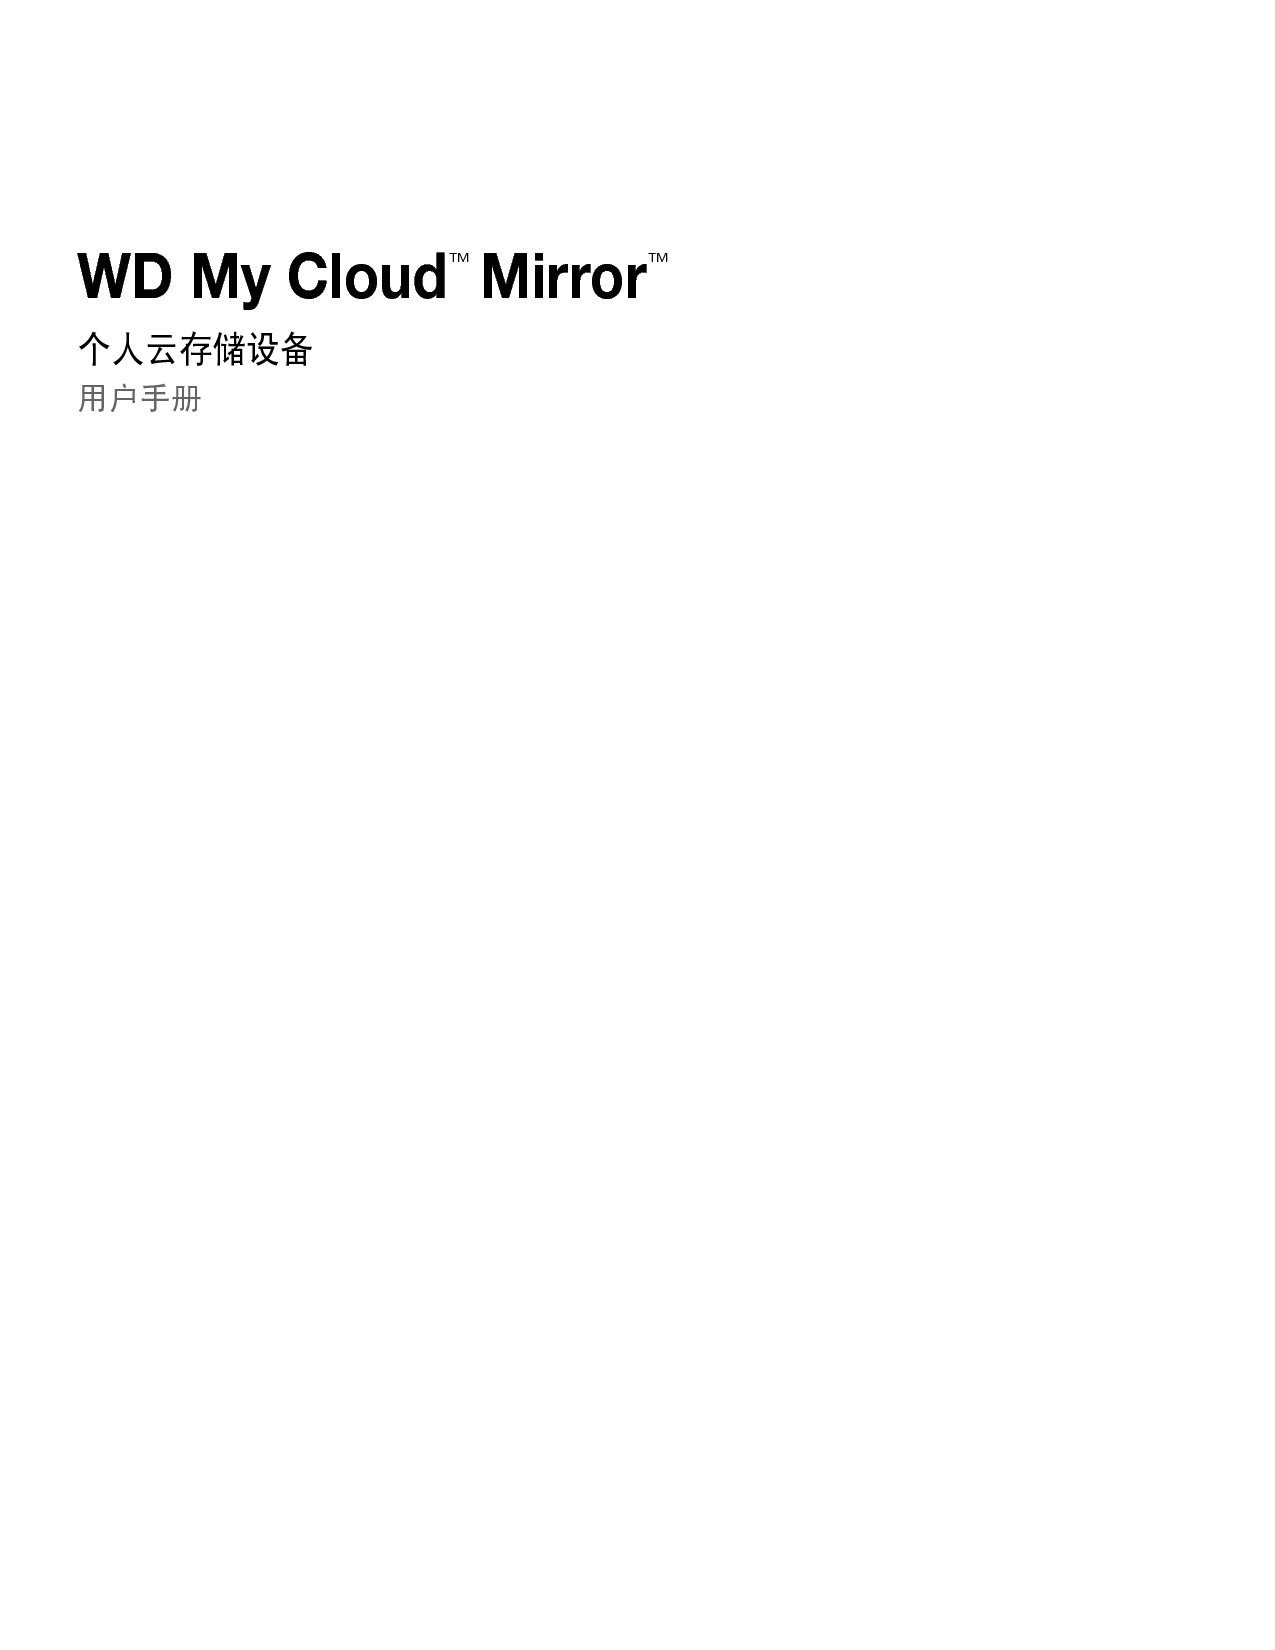 西部数据 Western Digital WD My Cloud Mirror 用户手册 封面